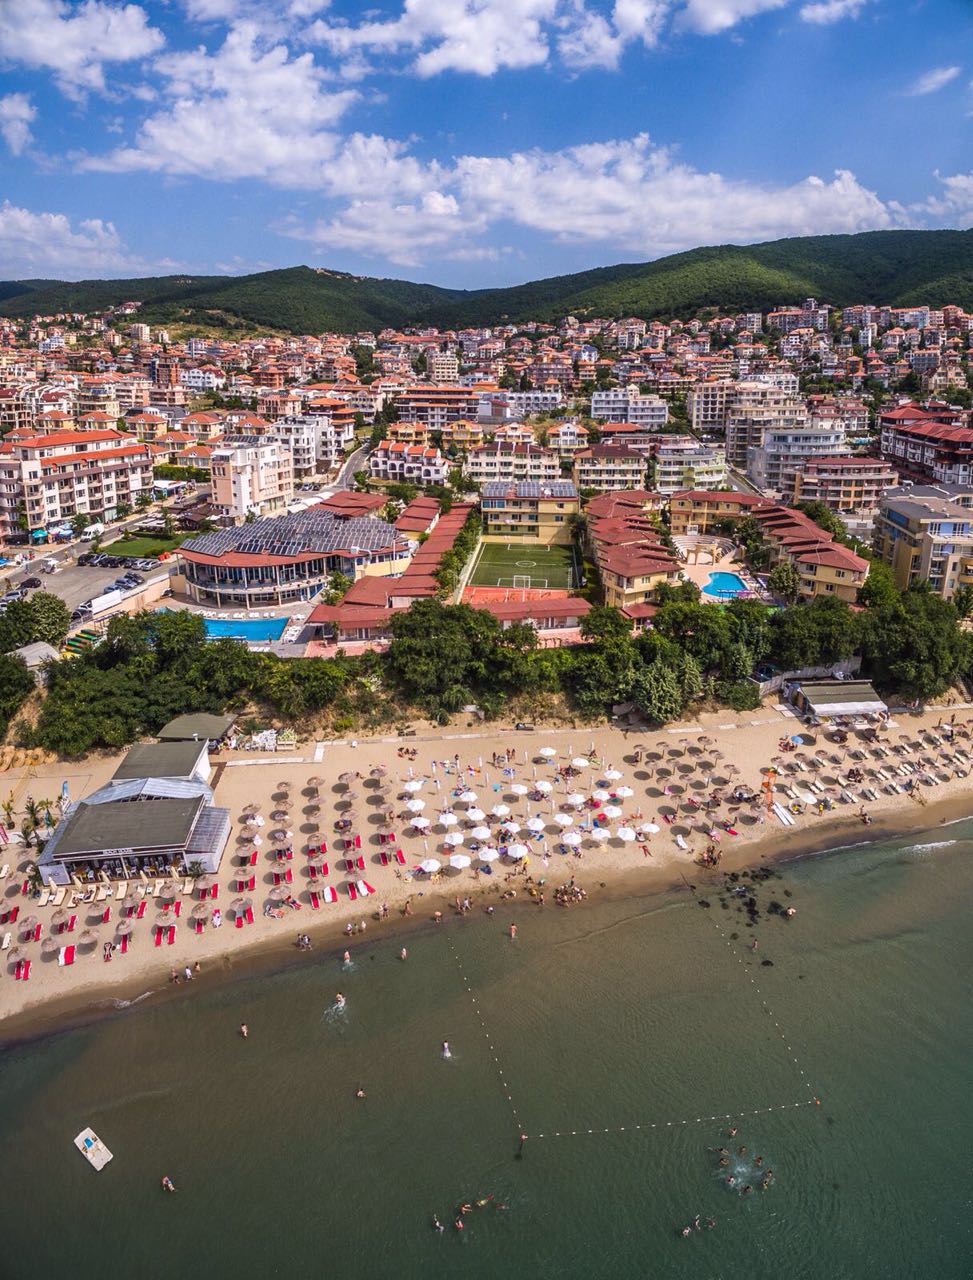 Святой влас, болгария – семейный отдых на чёрном море